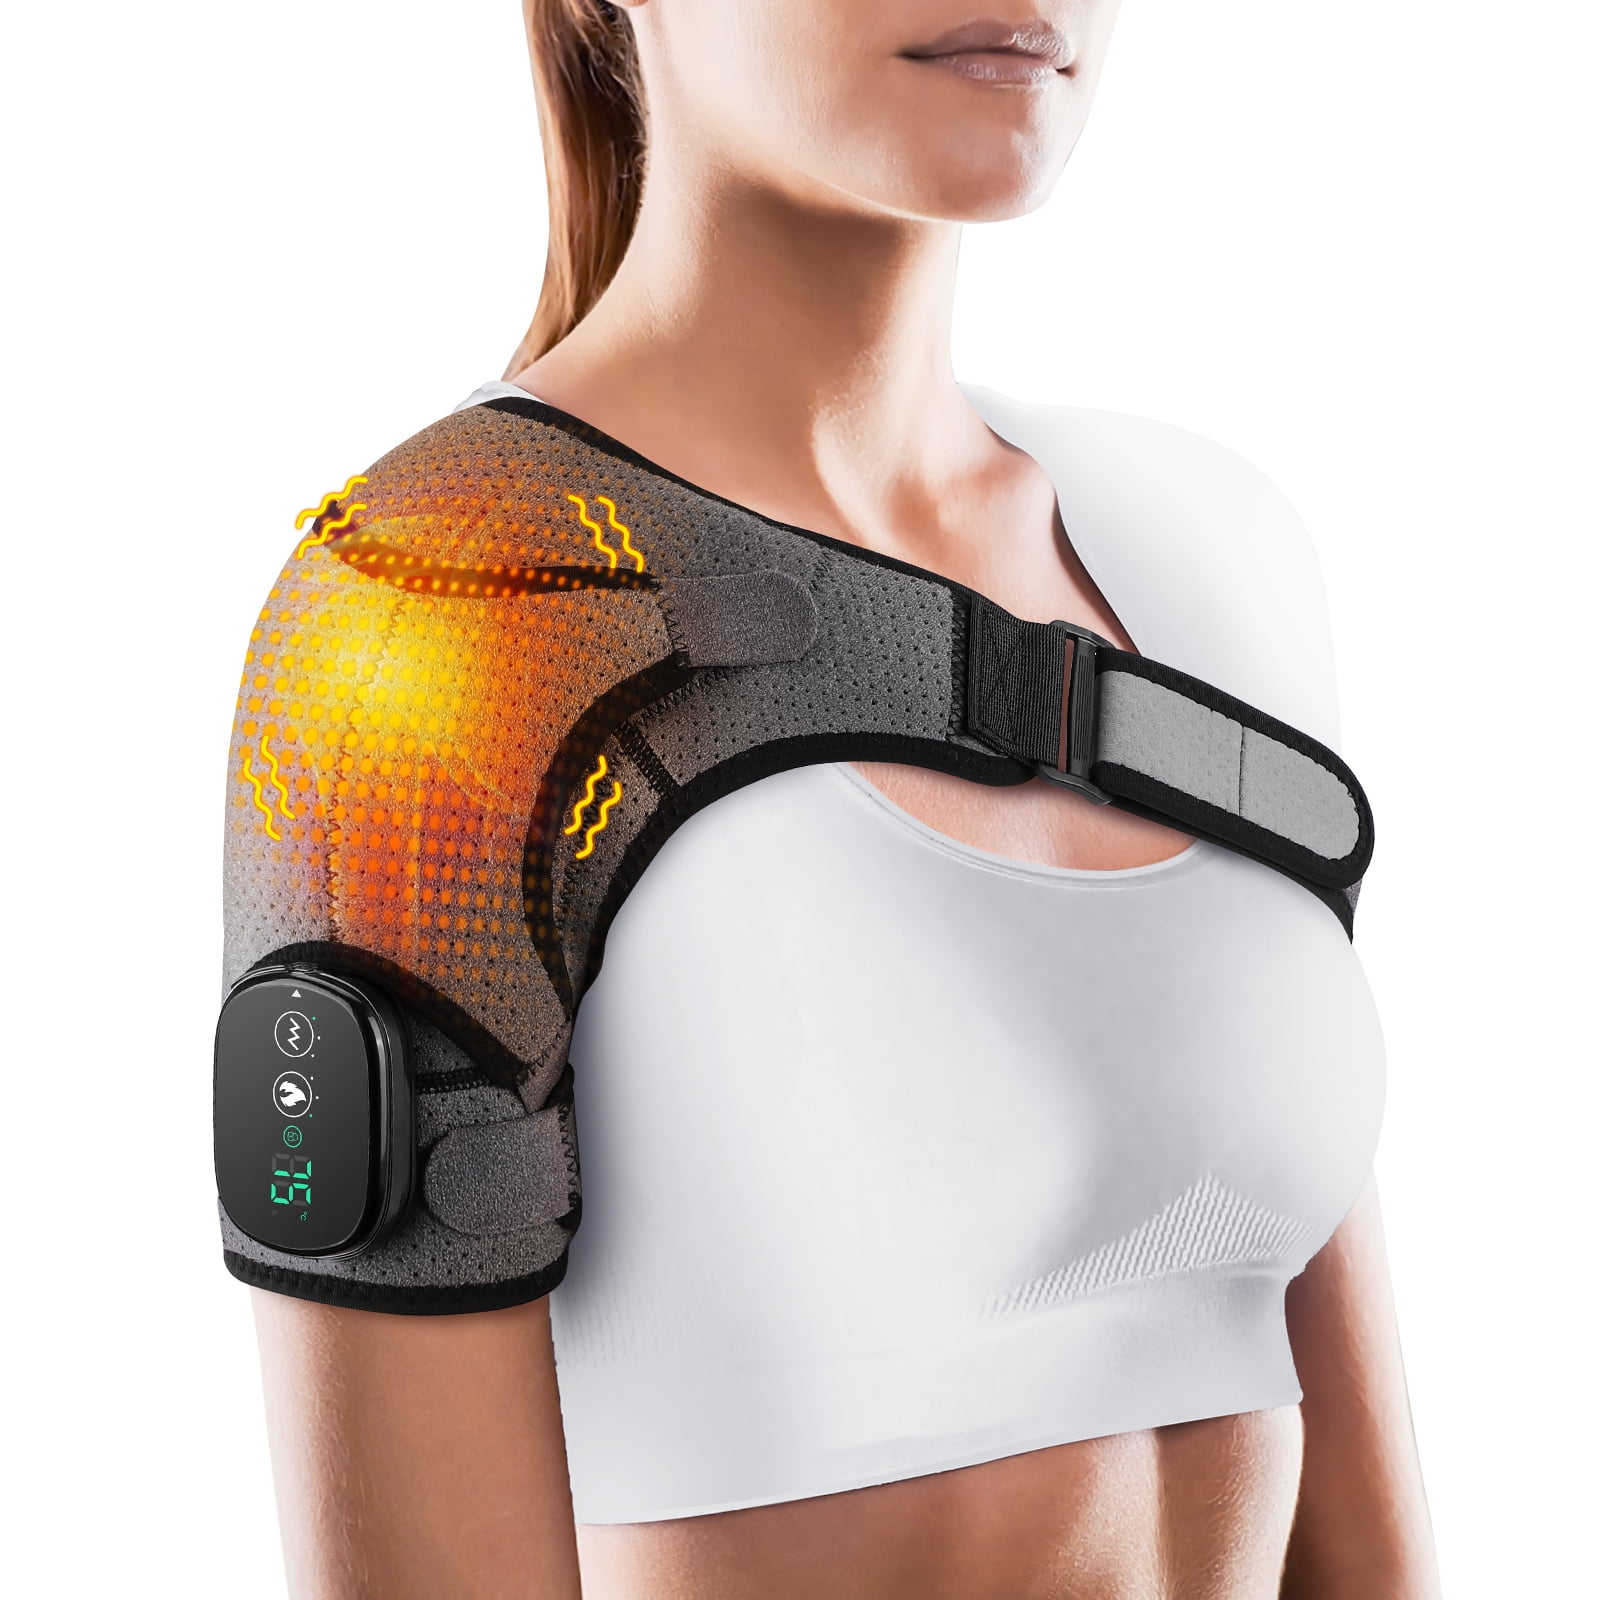 TRAKK Massaging Heating Shoulder Brace & Wrap Black TR-SHWP-300